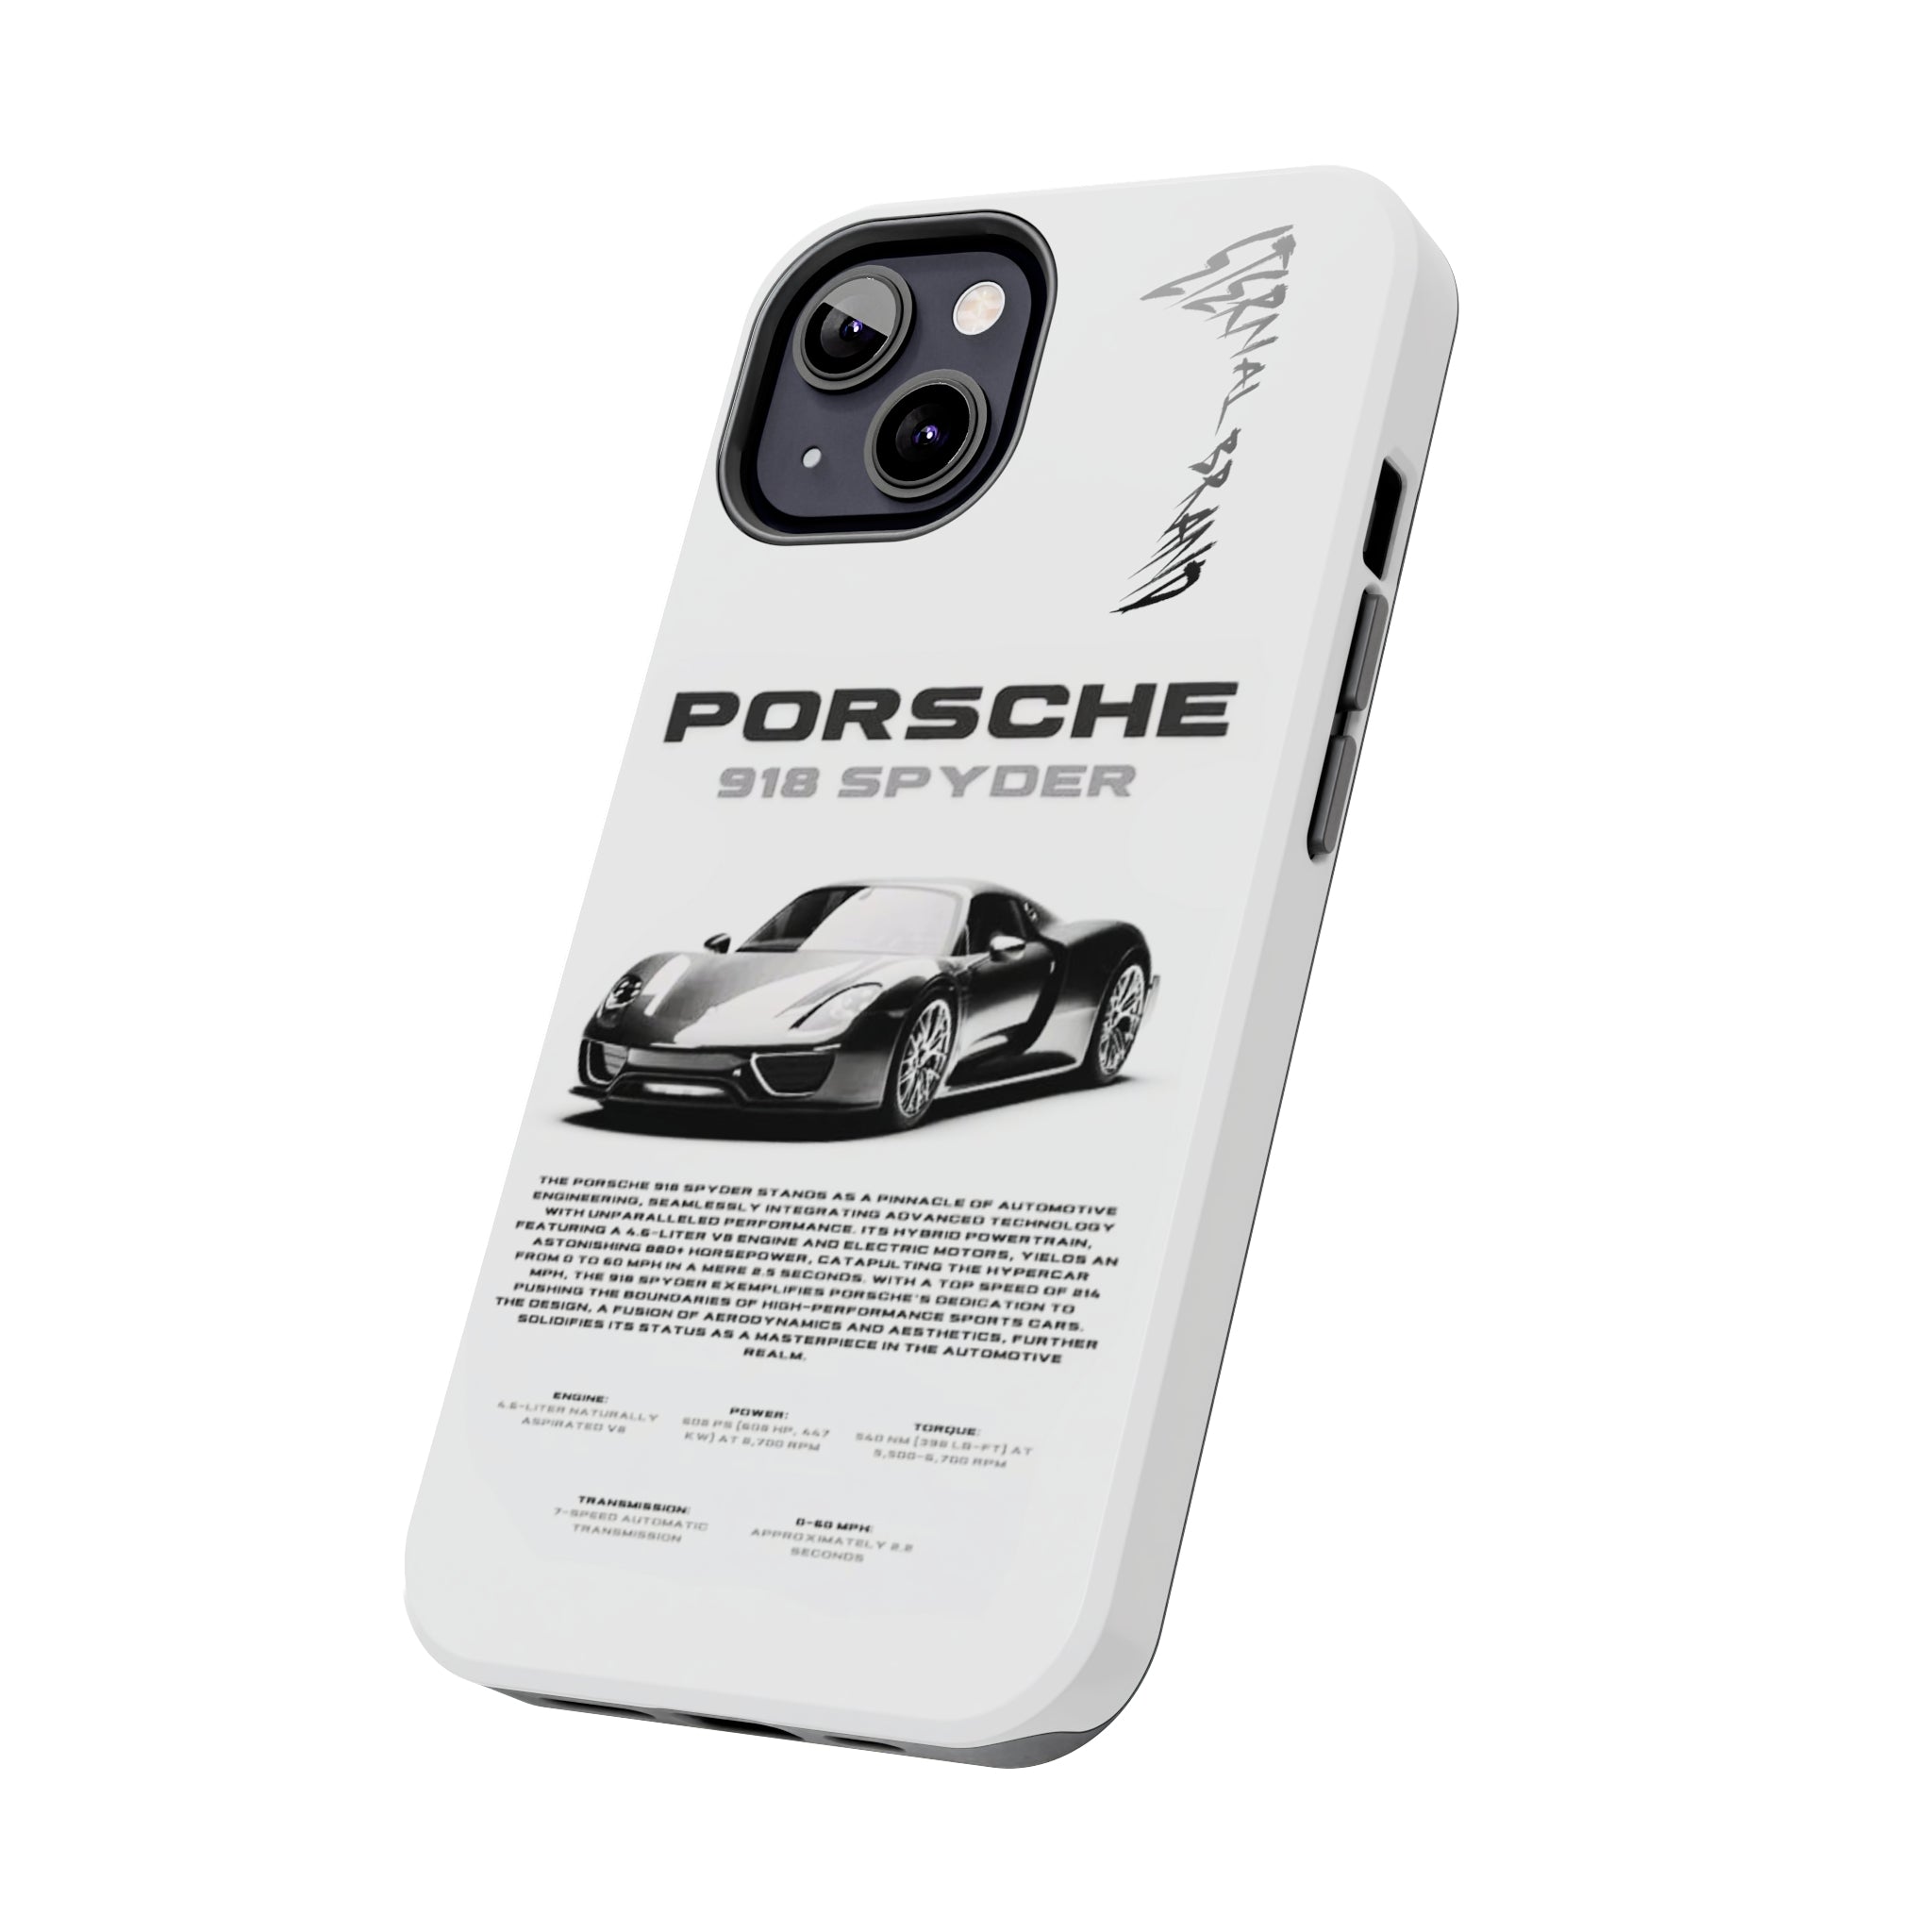 Porsche 918 Spyder "Void"